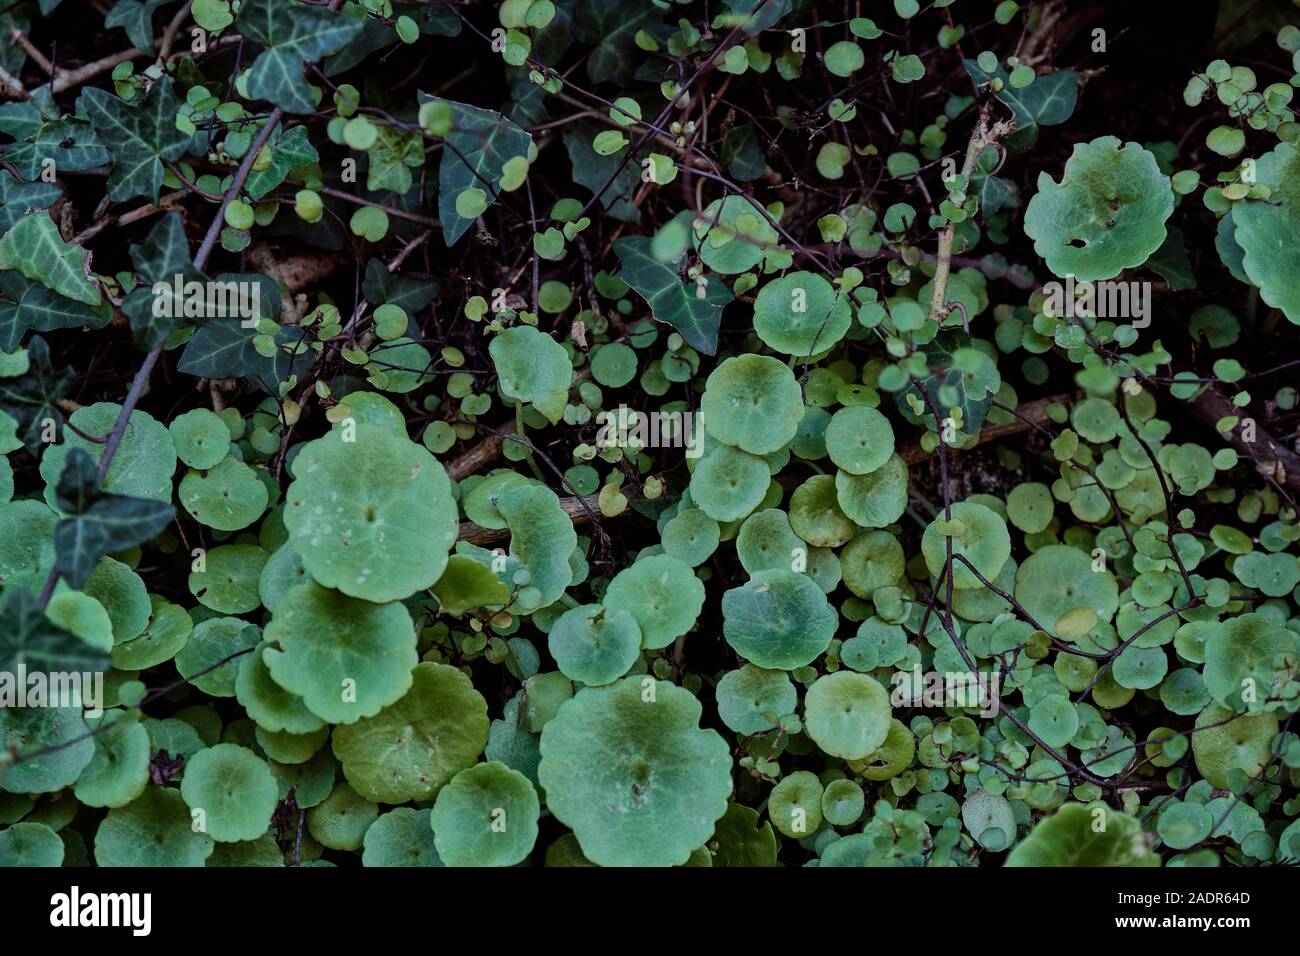 Dettagli di una parete verde con diversi tipi di piante Foto Stock